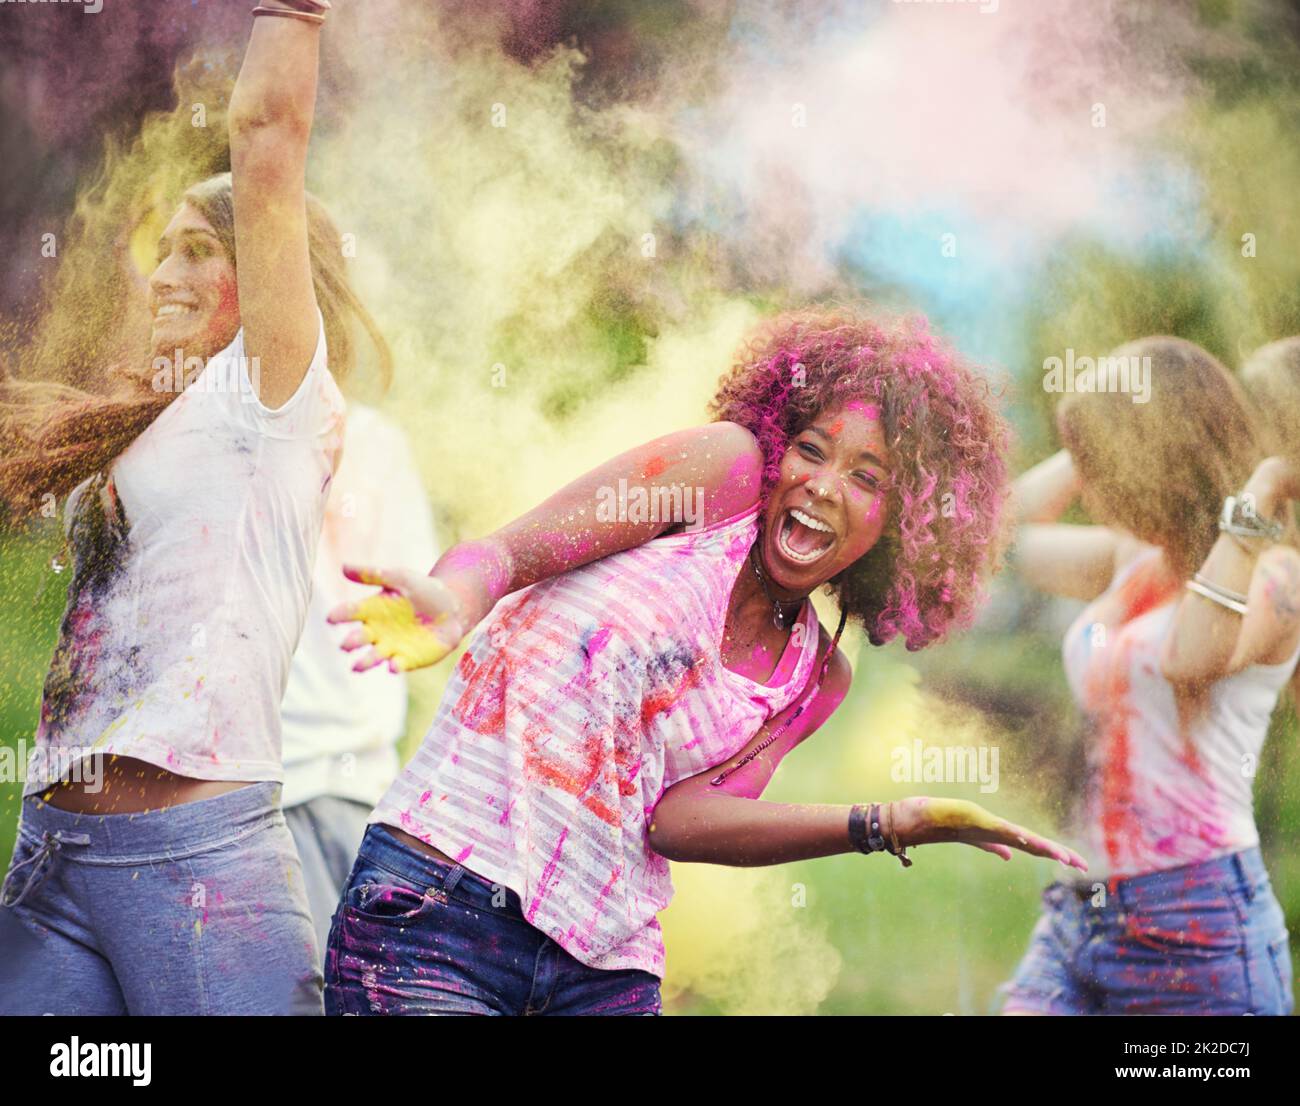 Spaß mit Freunden und Farben. Aufnahme von glücklichen Freunden, die Spaß mit Pulverfarbe haben. Stockfoto